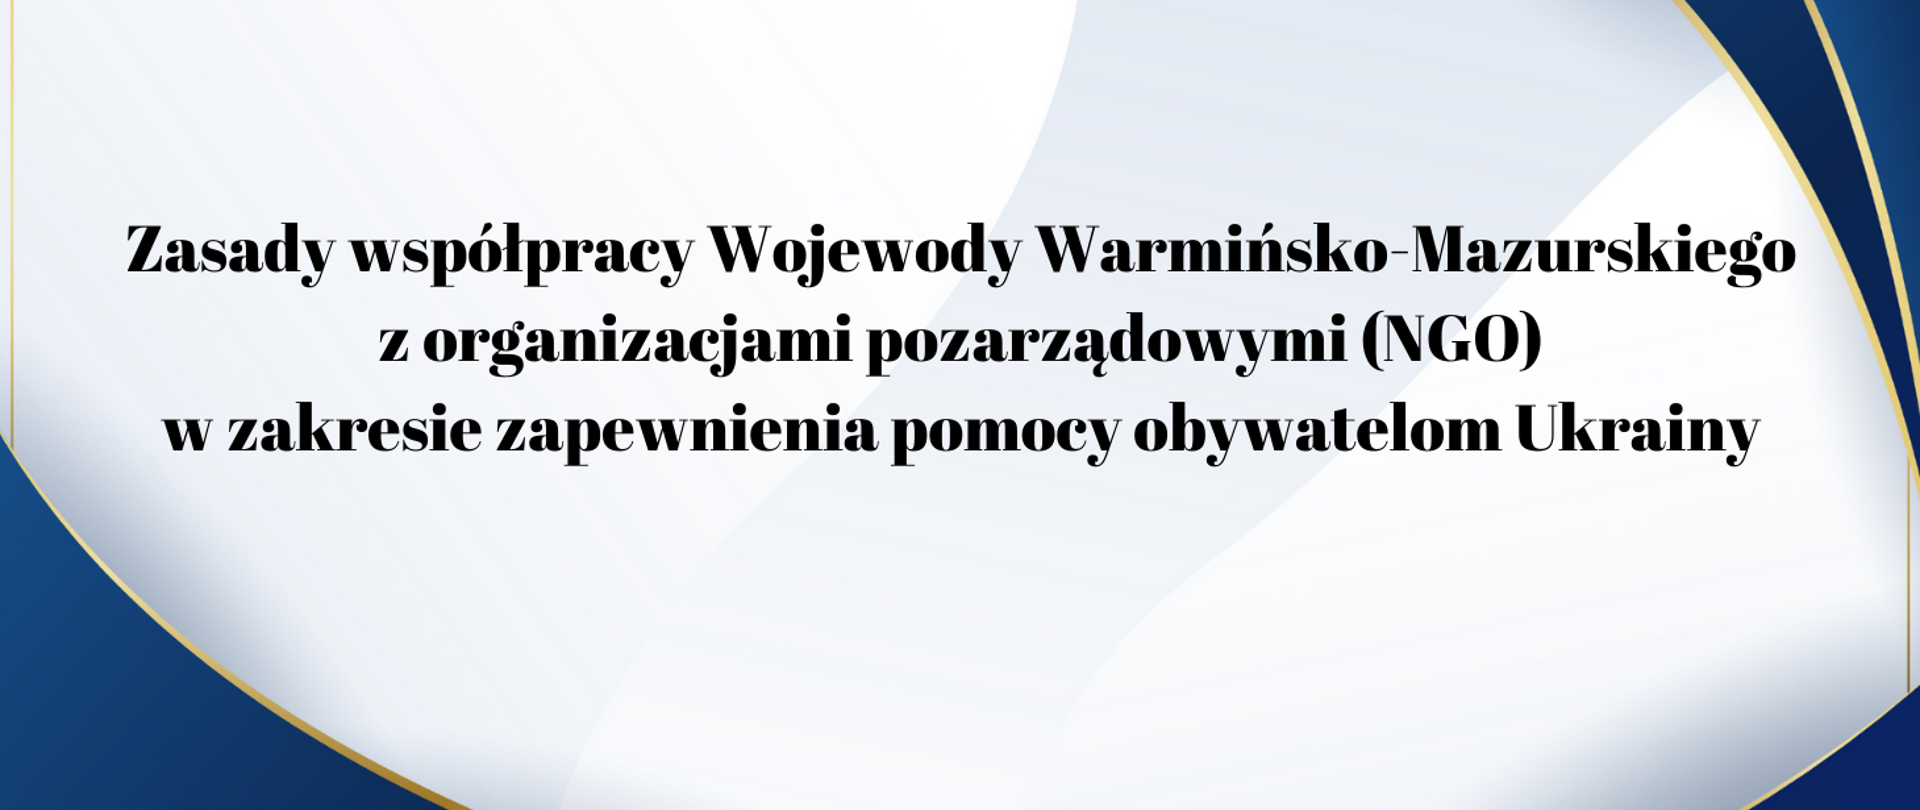 Zasady współpracy Wojewody Warmińsko-Mazurskiego
z organizacjami pozarządowymi